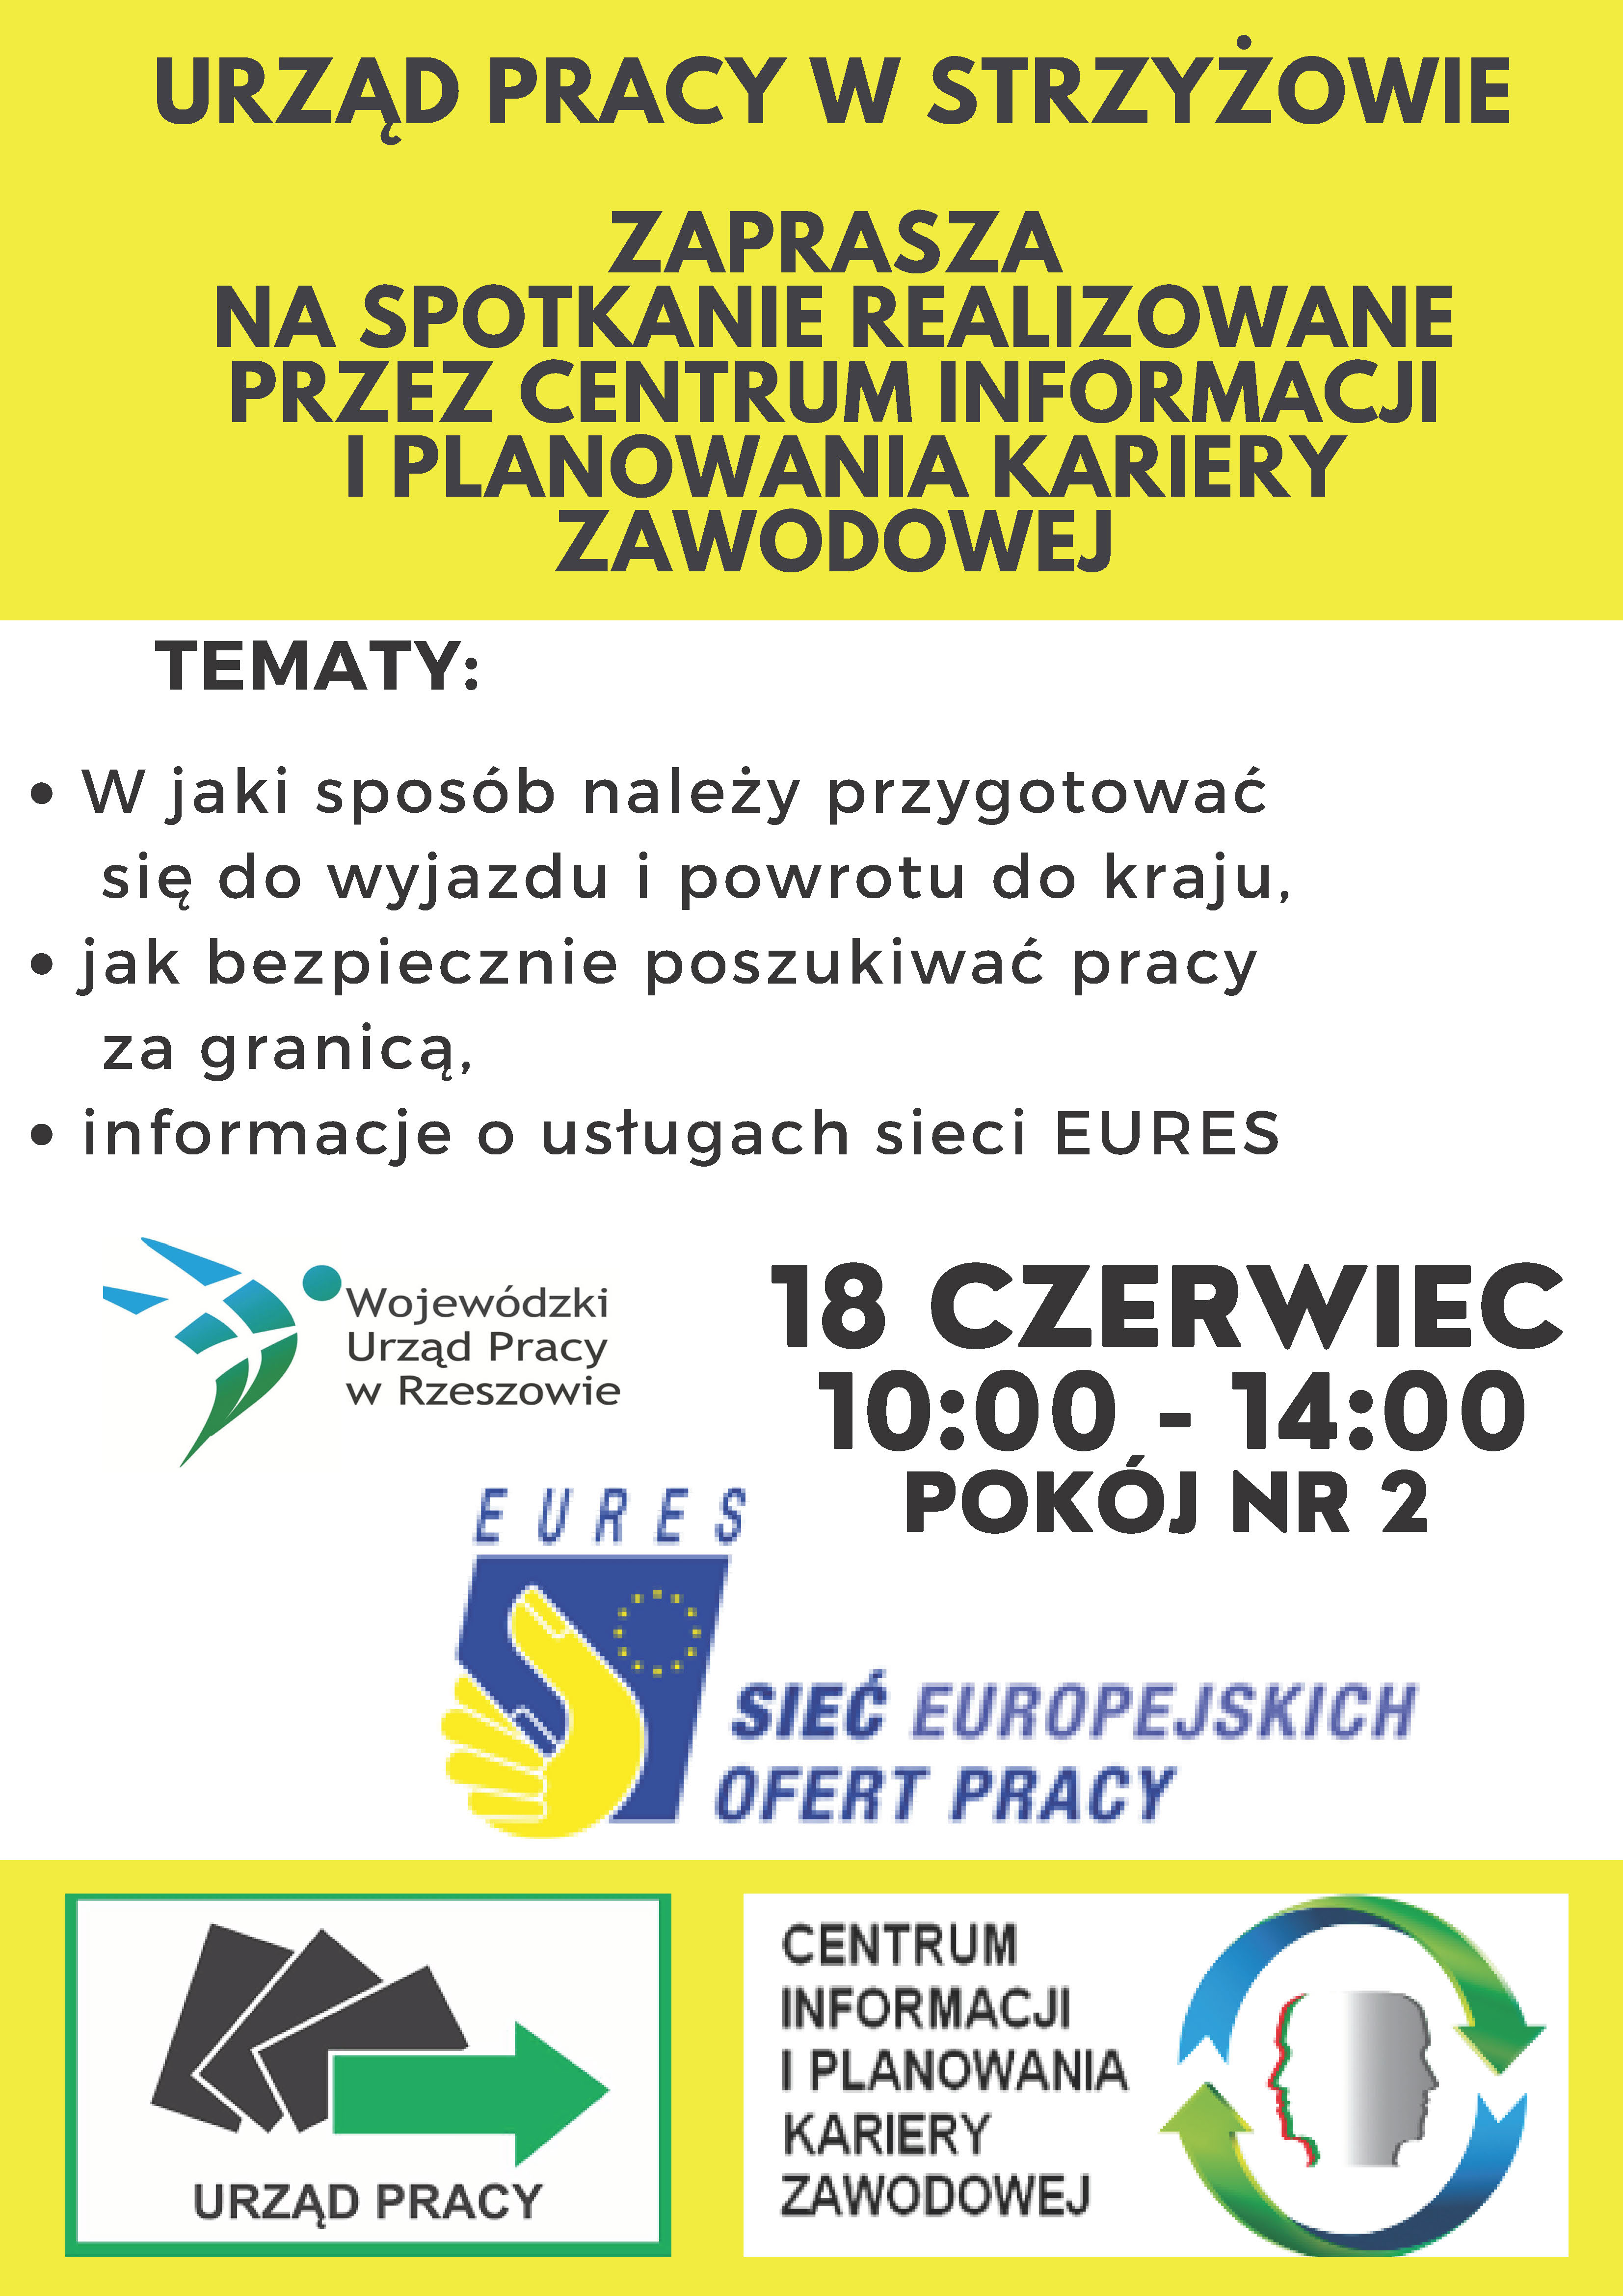 Plakat informujący o zaproszeniu osób bezrobotnych na spotkanie w ramach sieci Eures